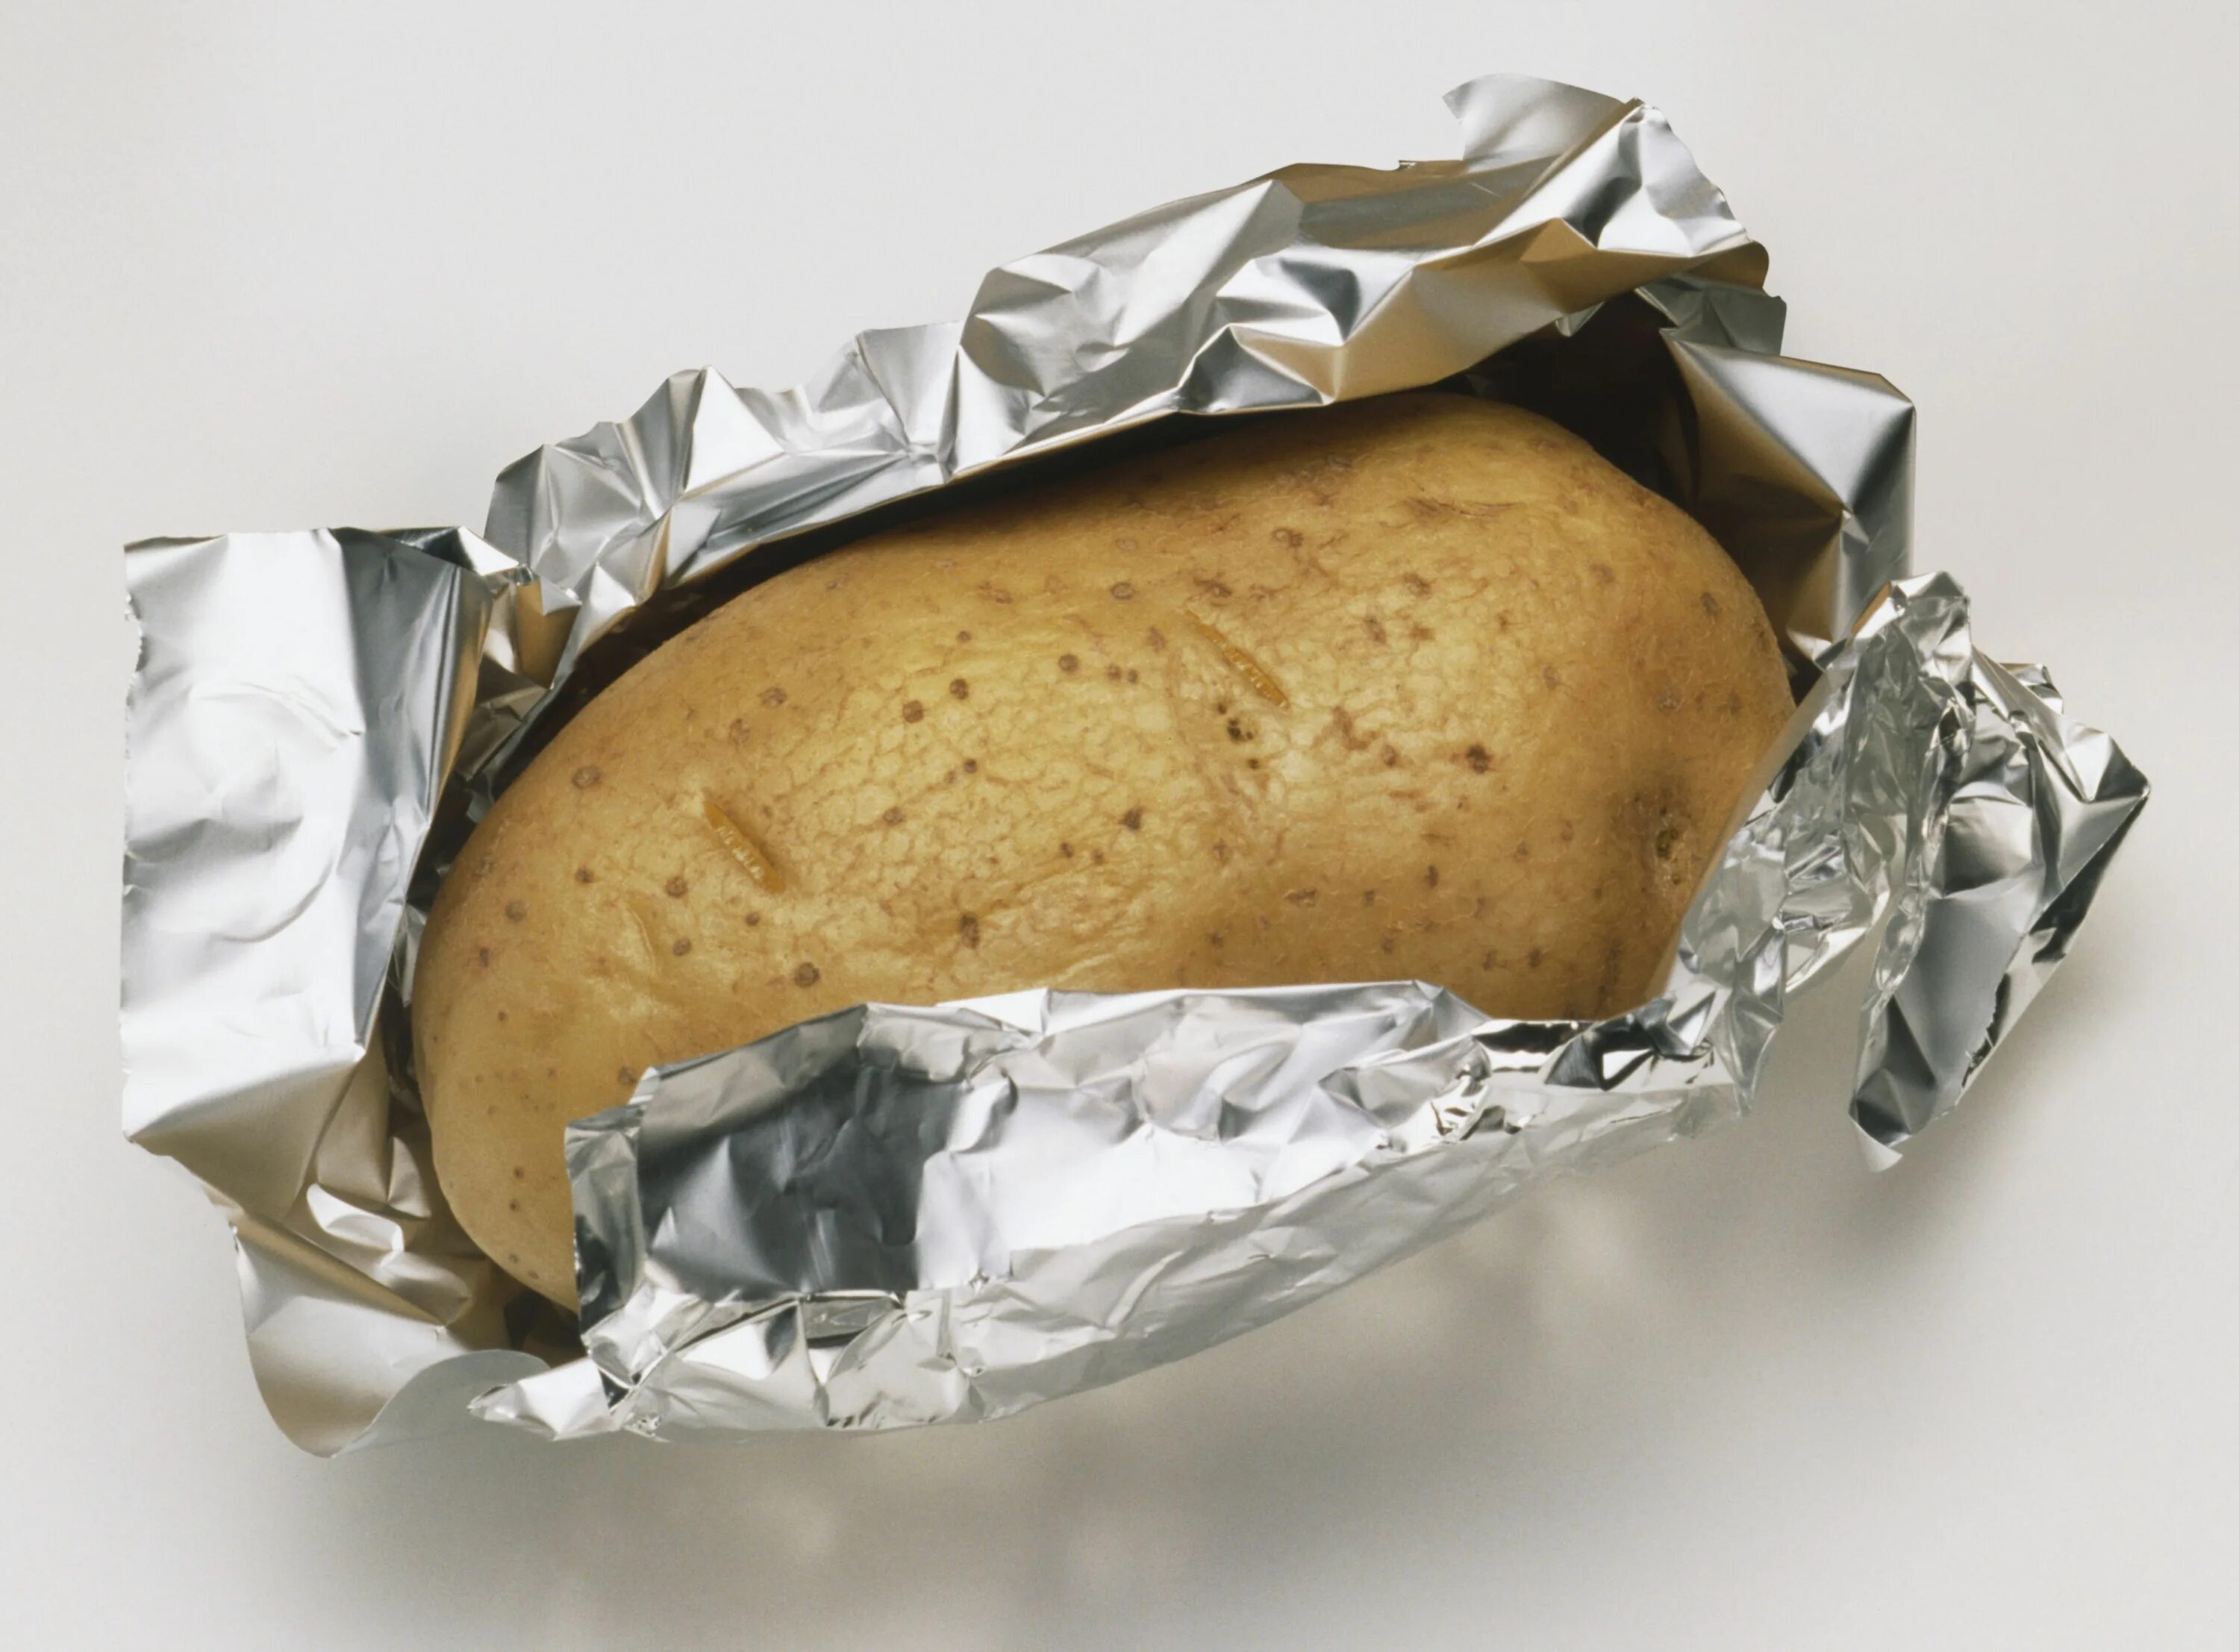 Картошка в фольге. Печеная картошка в фольге. Картофель запеченный в фольге. Картошка в фольге в духовке.